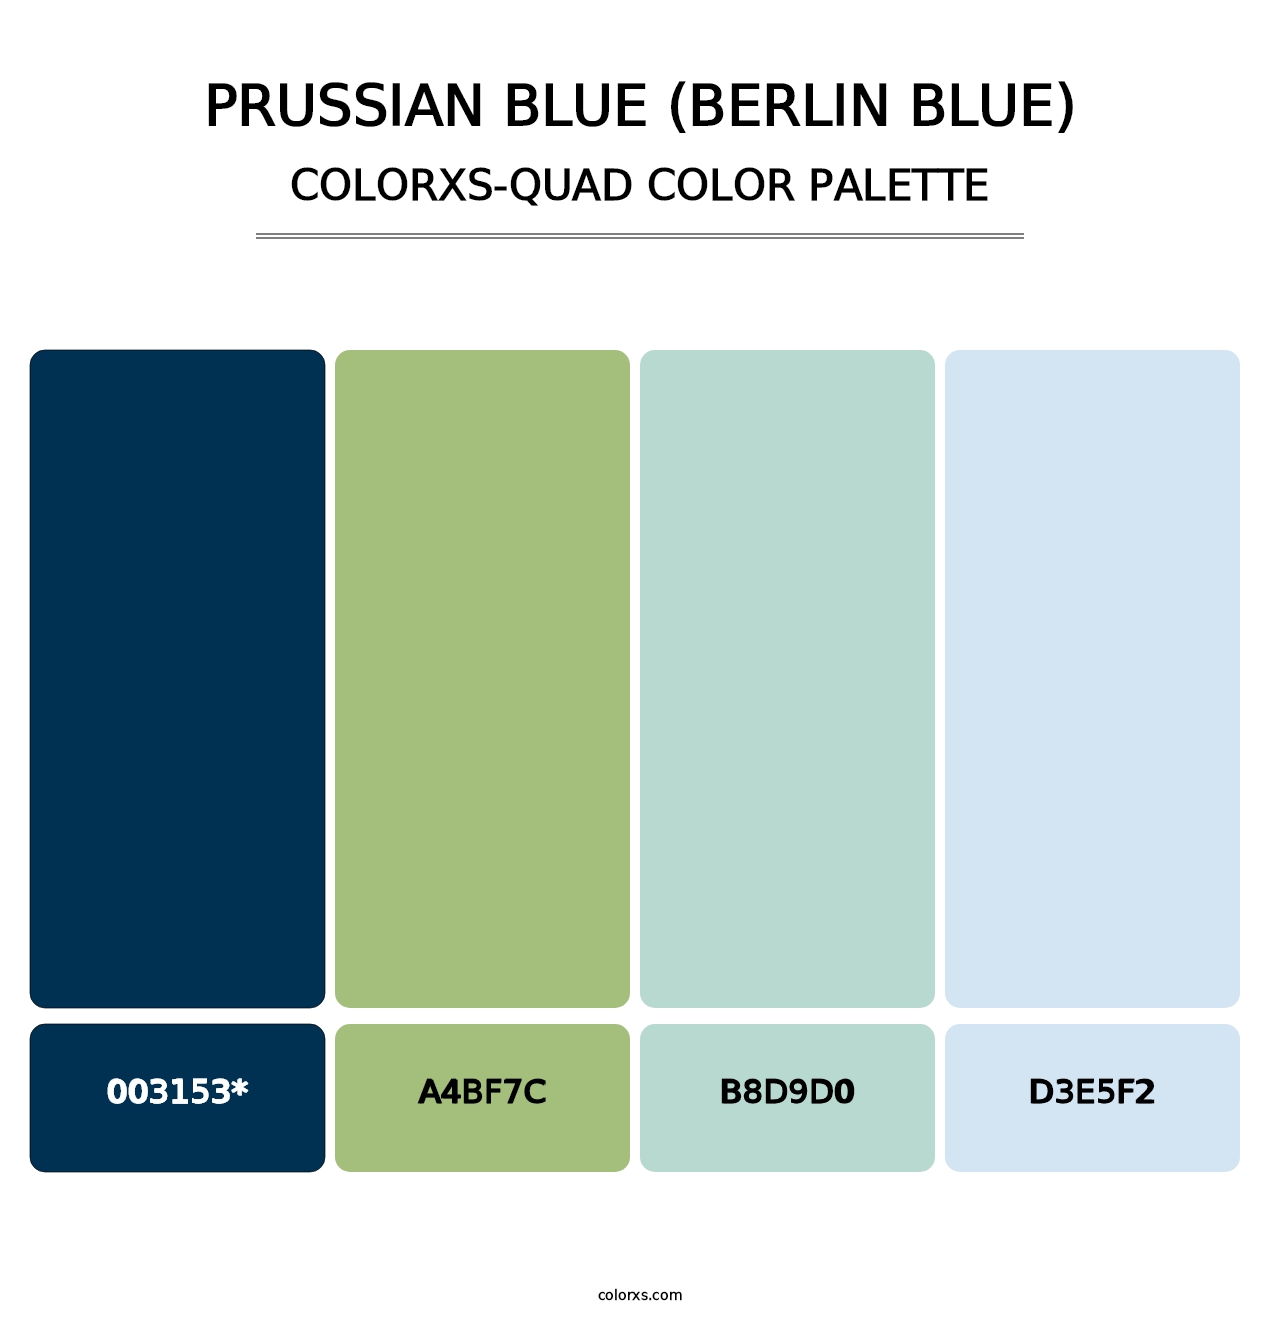 Prussian Blue (Berlin Blue) - Colorxs Quad Palette